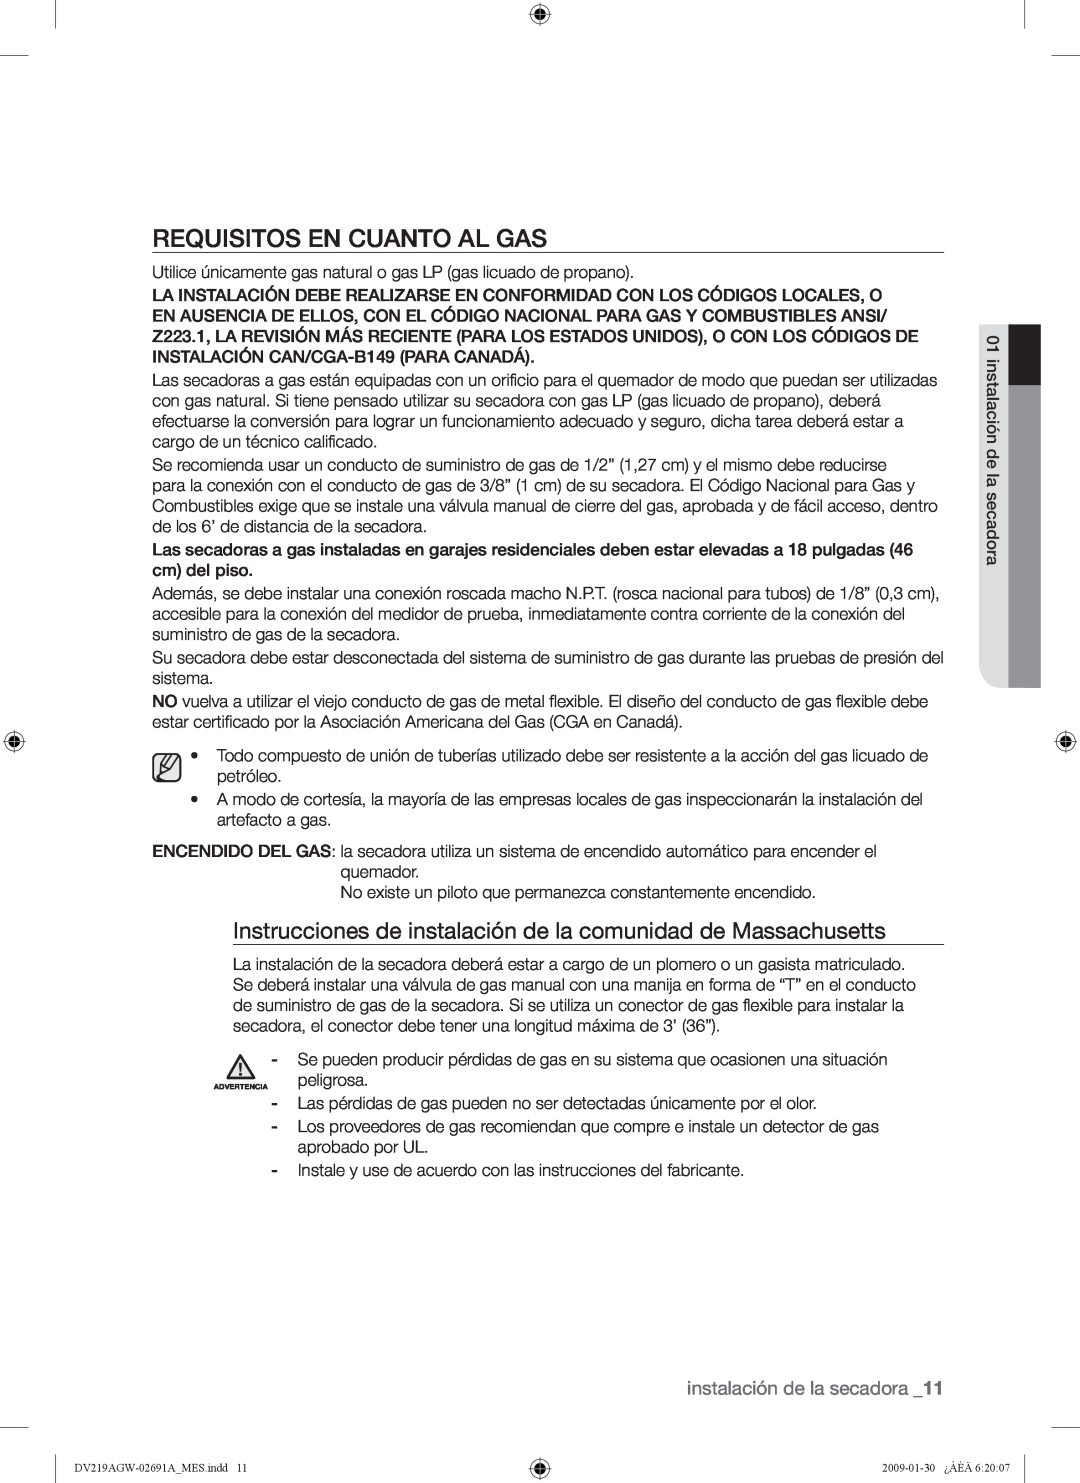 Samsung DV219AE*, DV219AGW Requisitos En Cuanto Al Gas, Instrucciones de instalación de la comunidad de Massachusetts 